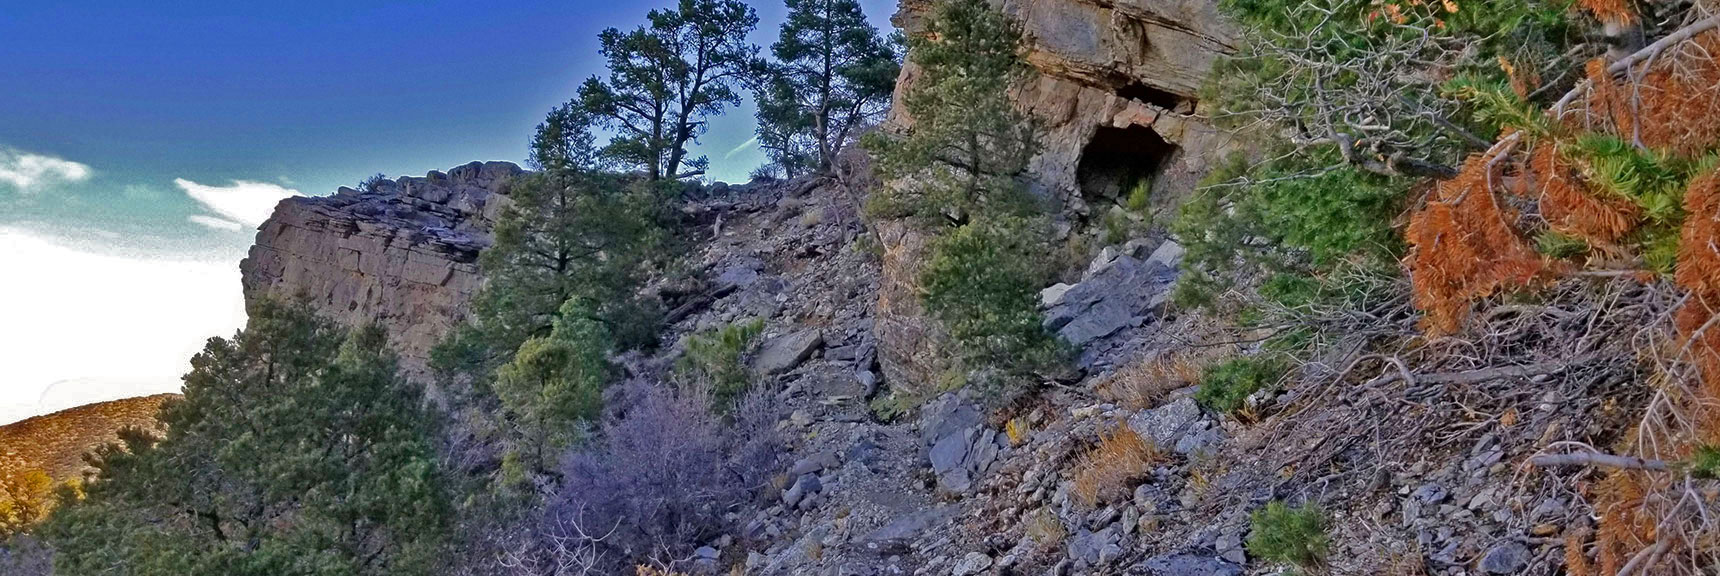 Northern Cliffs Trail | Potosi Mountain | Spring Mountains, Nevada